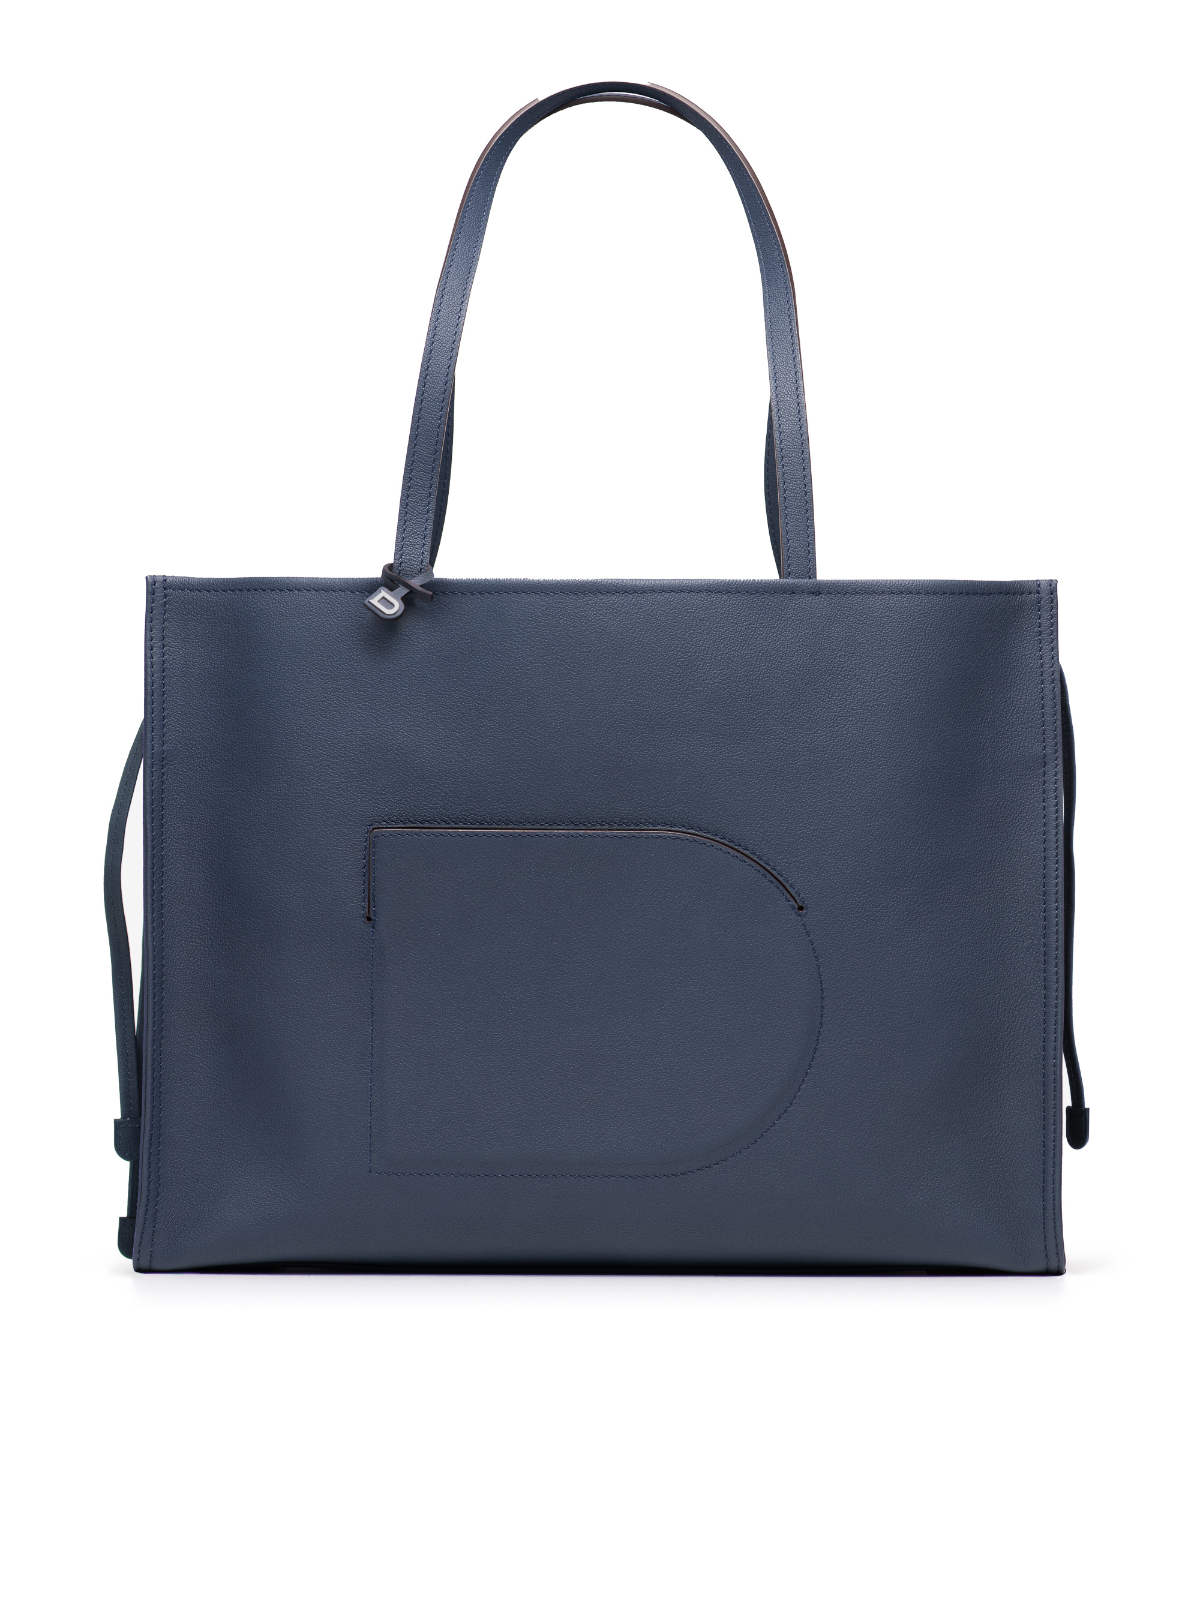 Delvaux Unveils Its New D Tote Bag